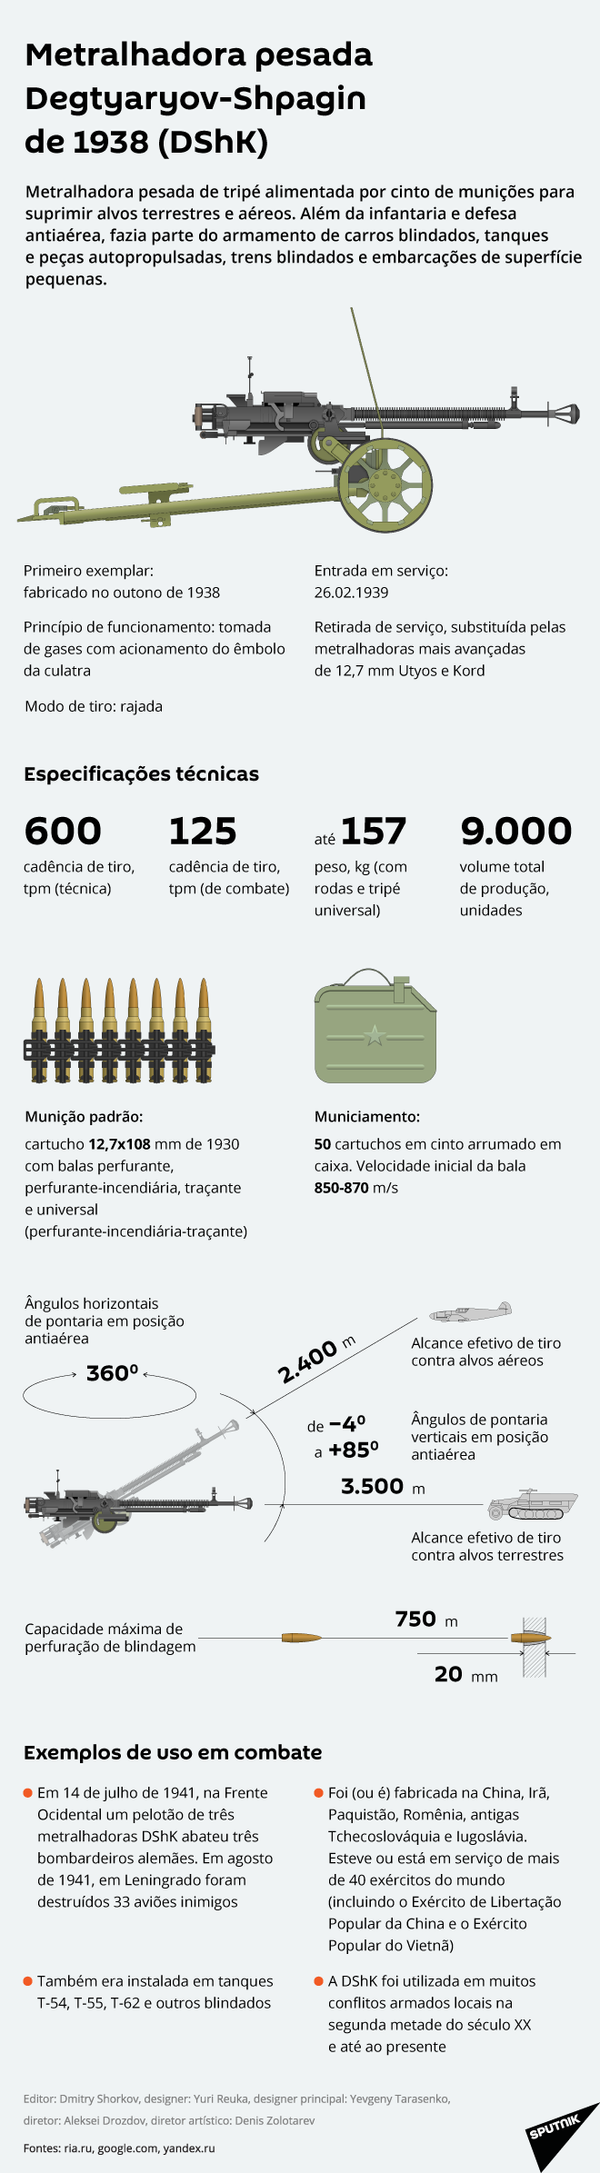 Passada pelas guerras: metralhadora pesada DShK - Sputnik Brasil